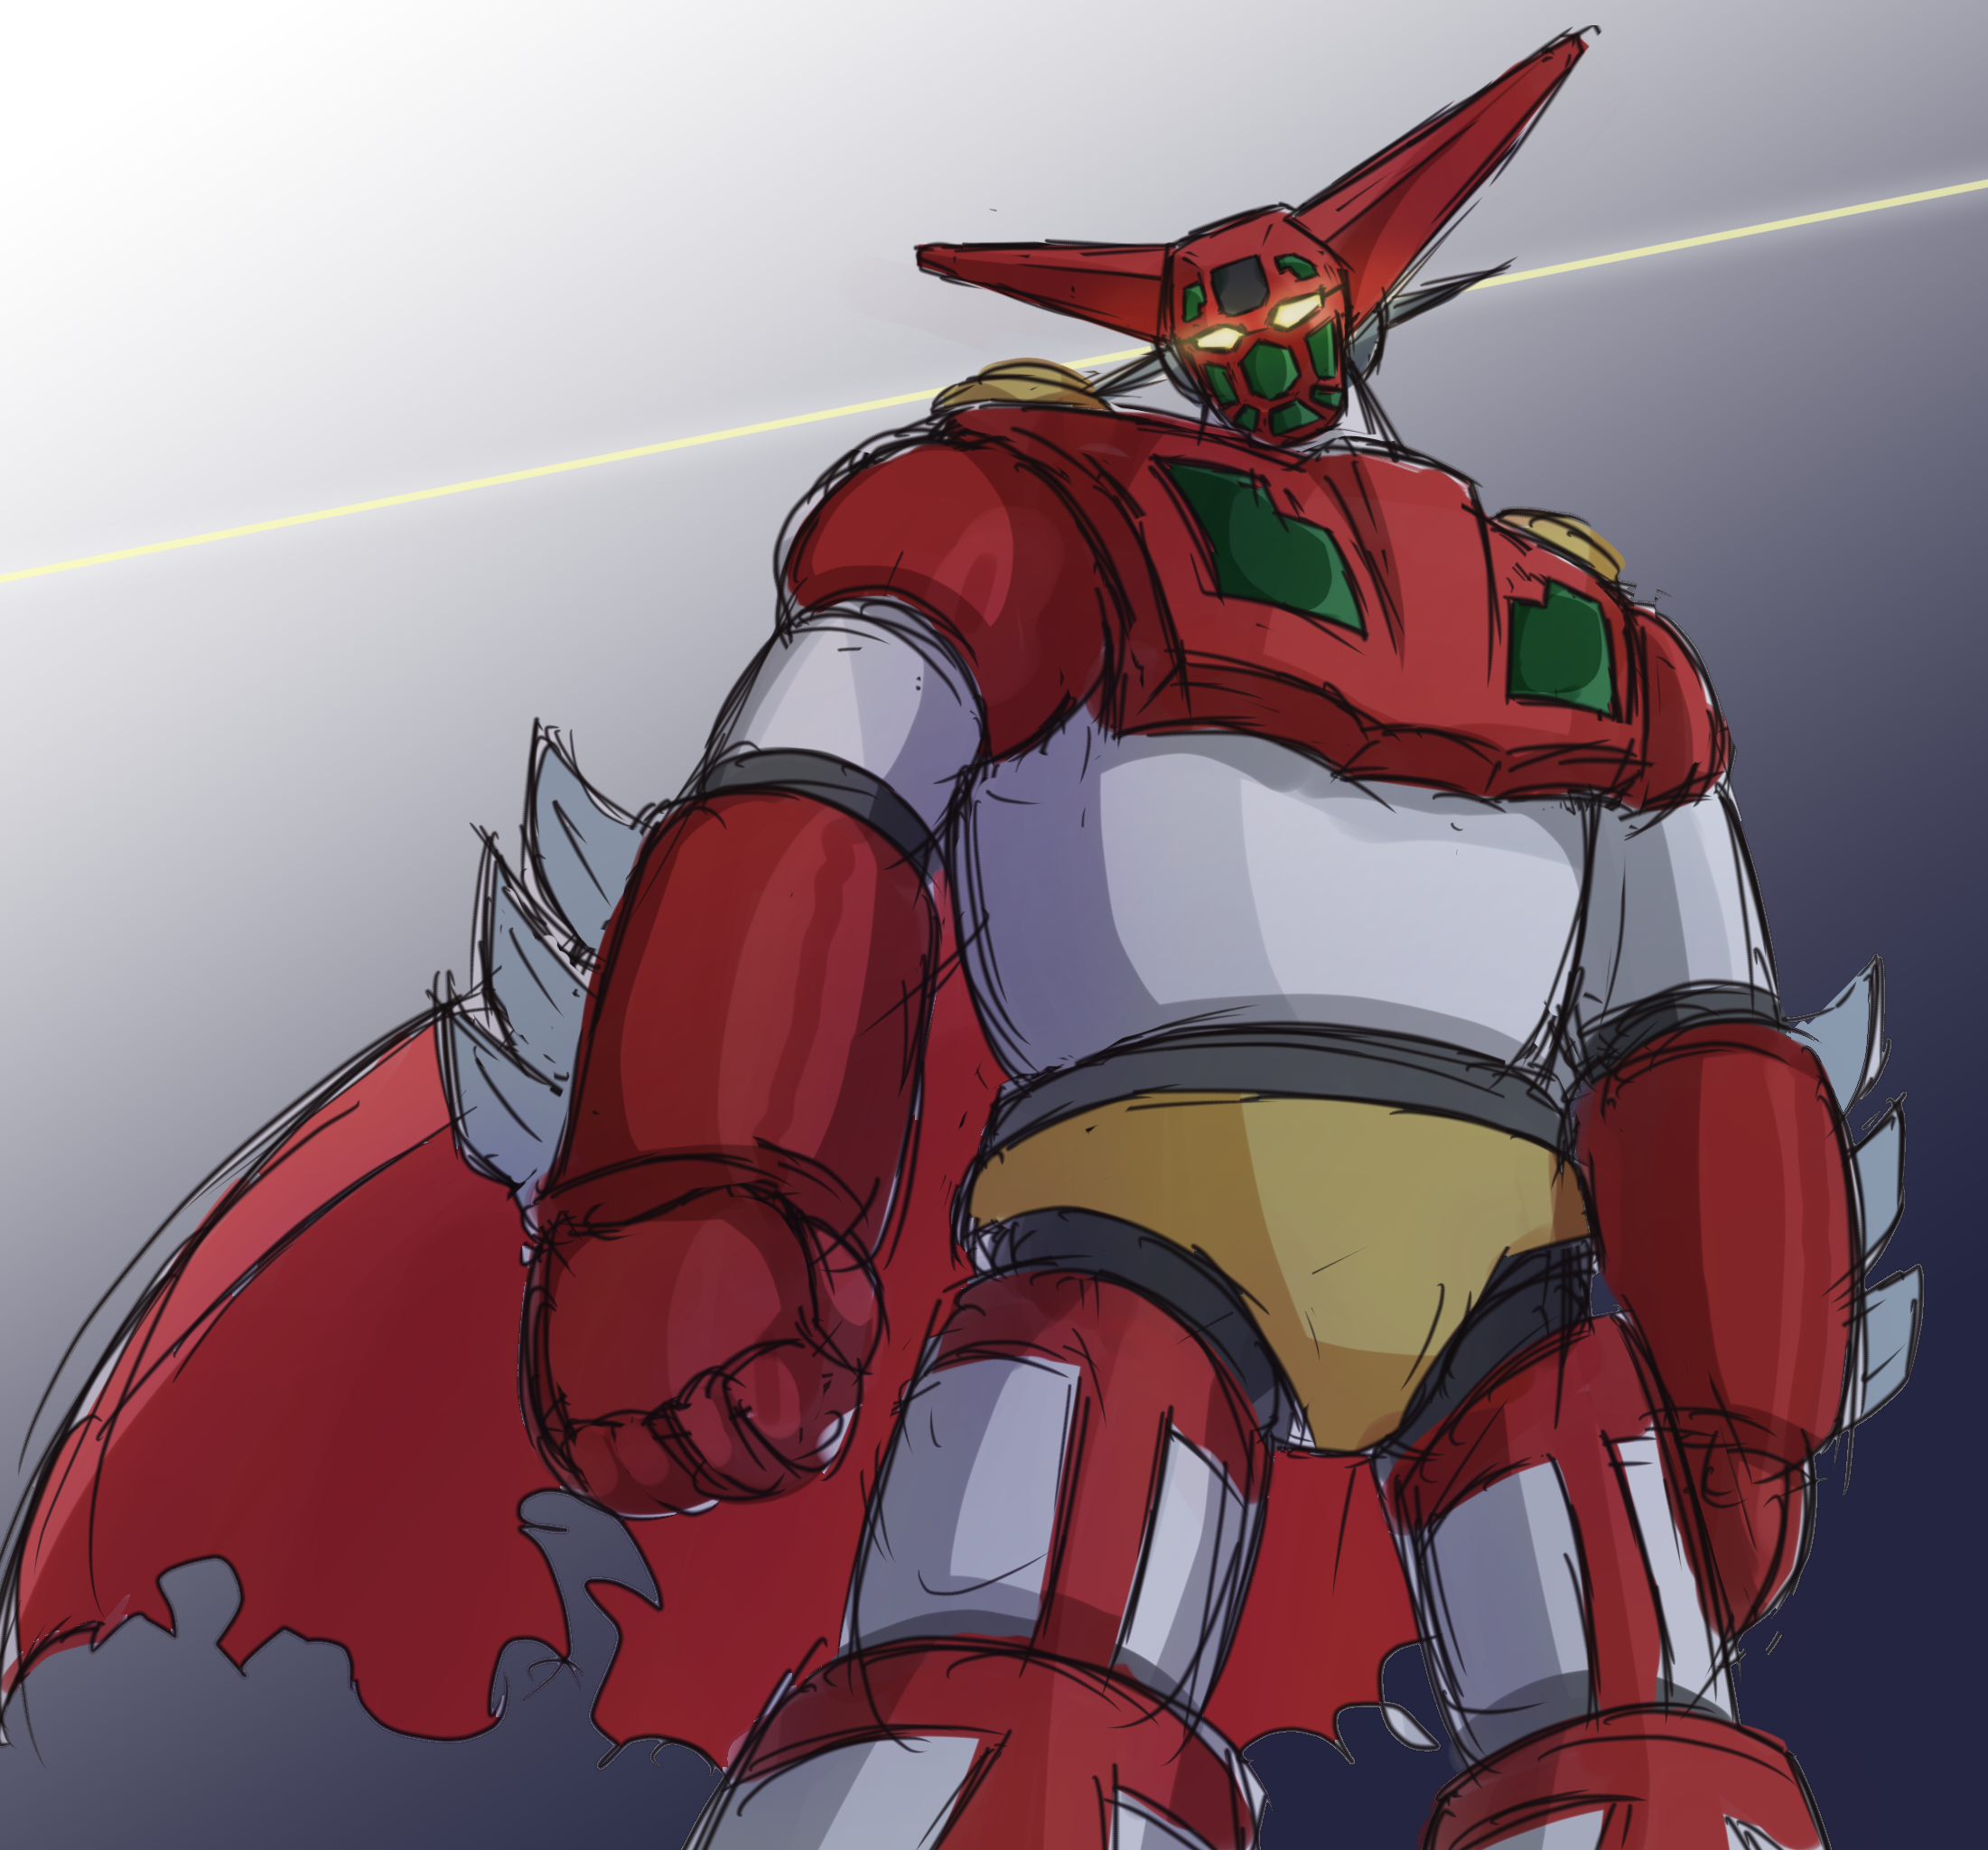 Anime Mechs Getter 1 Getter Robo Getter Robo Armageddon Super Robot Taisen Artwork Digital Art Fan A 2201x2048